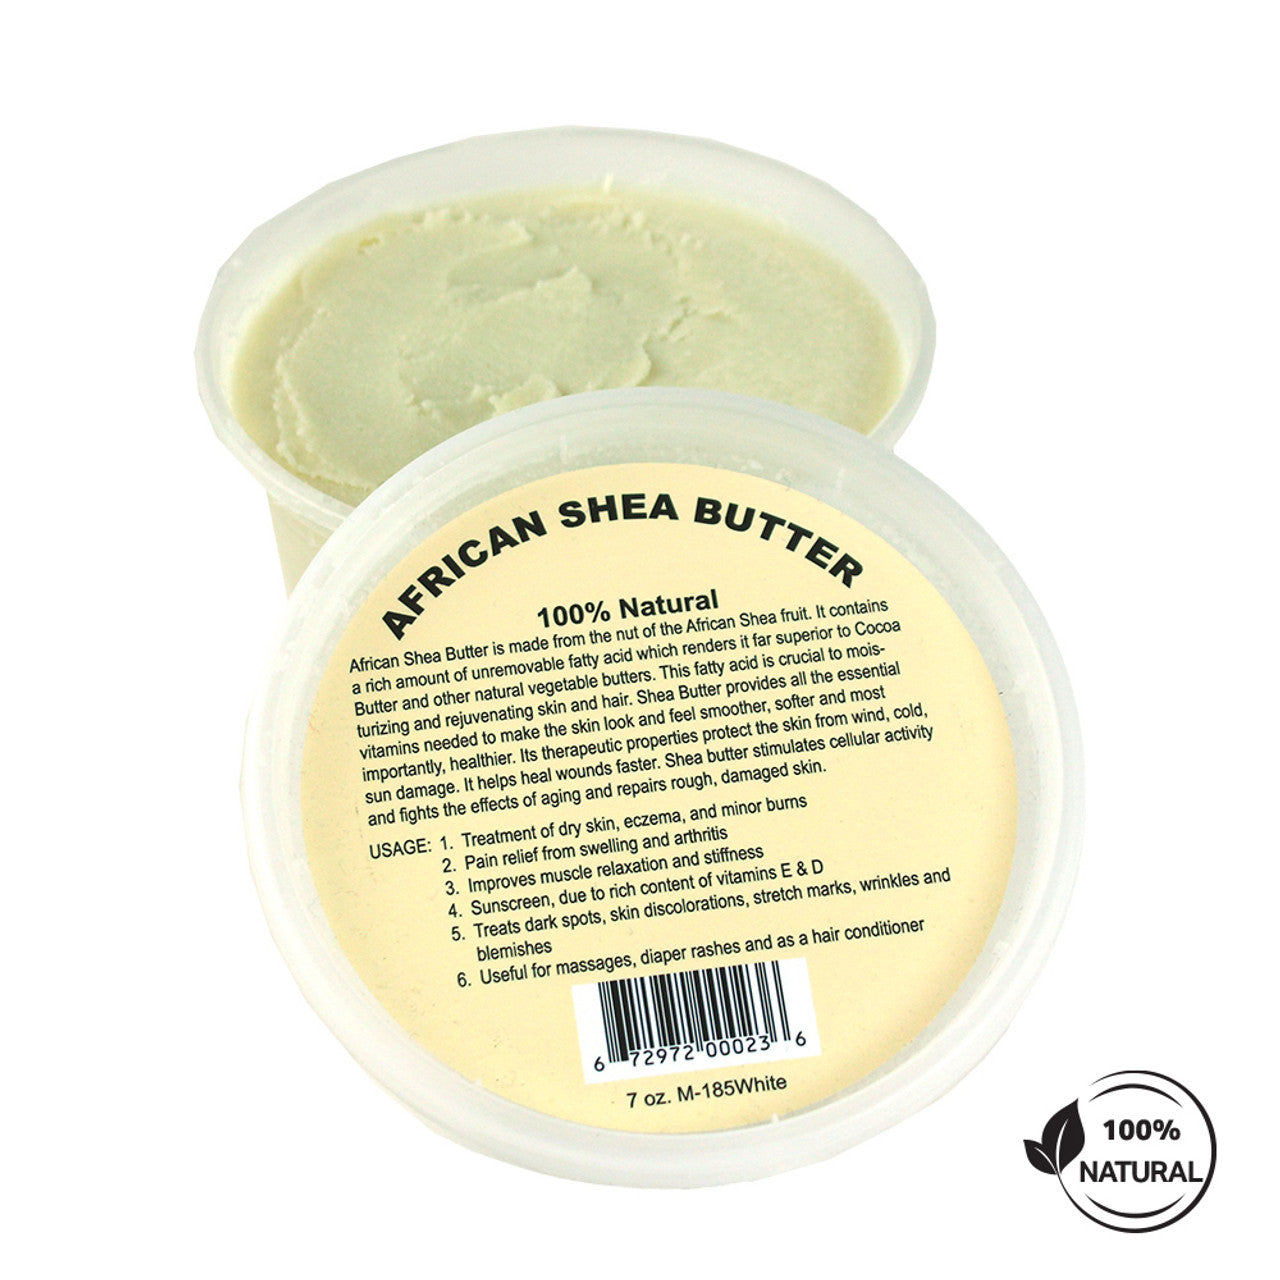 African shea butter